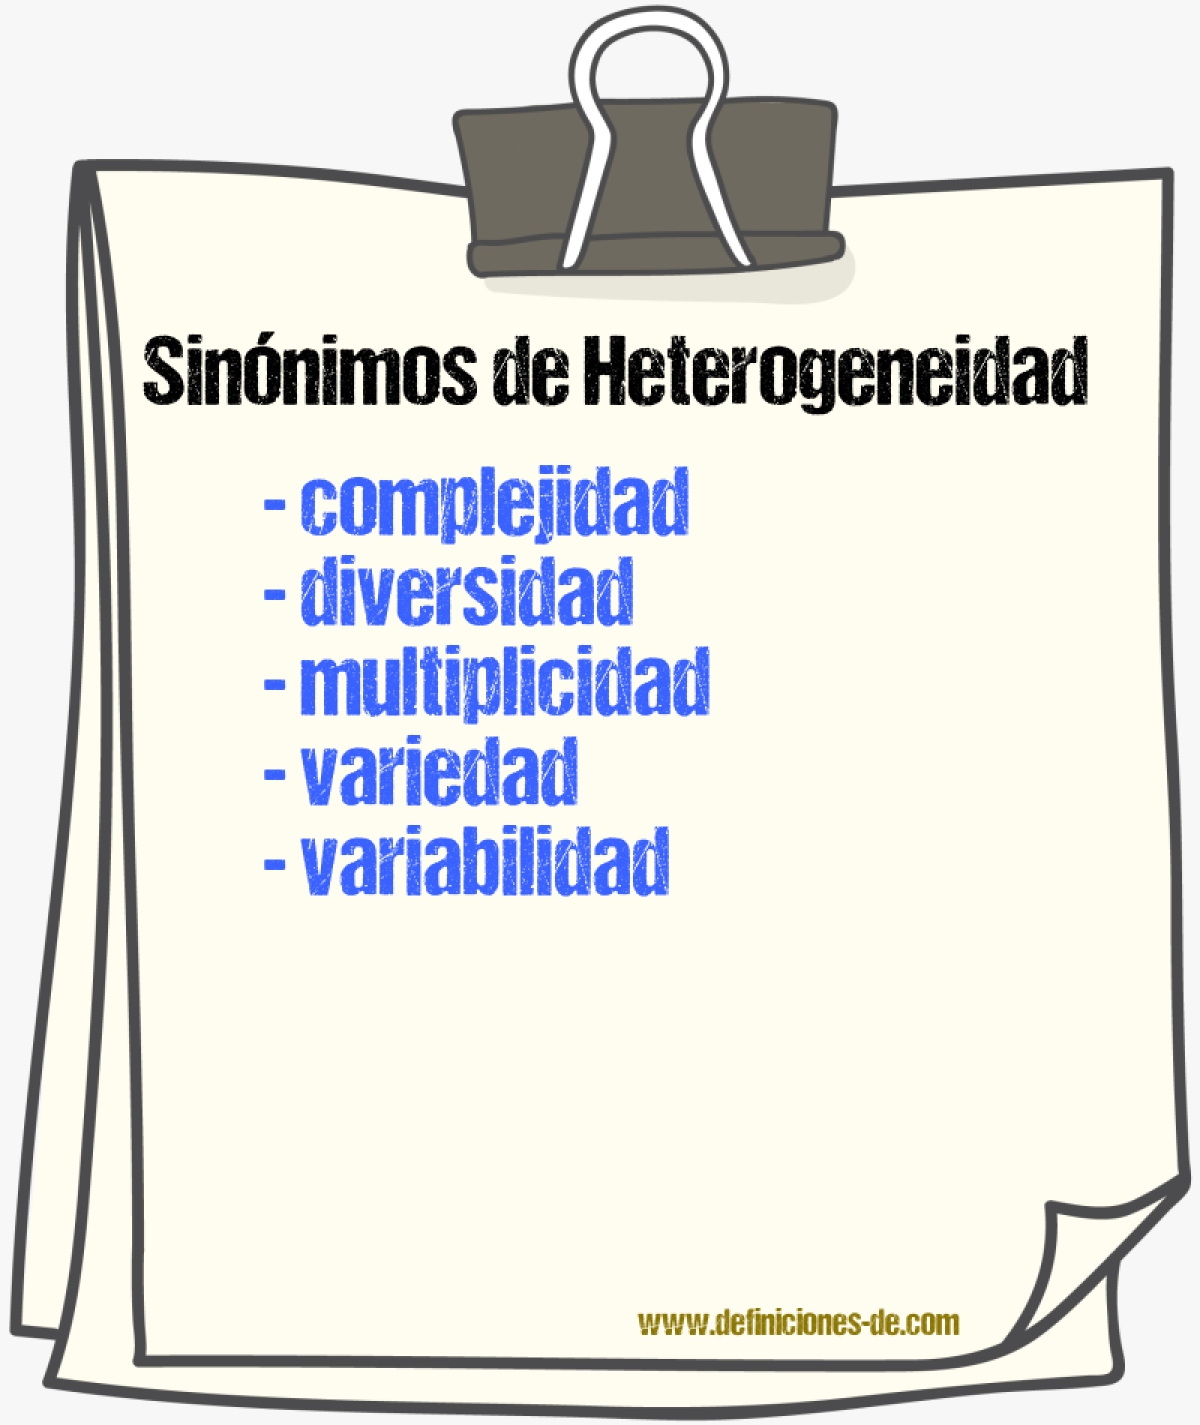 Sinónimos de heterogeneidad